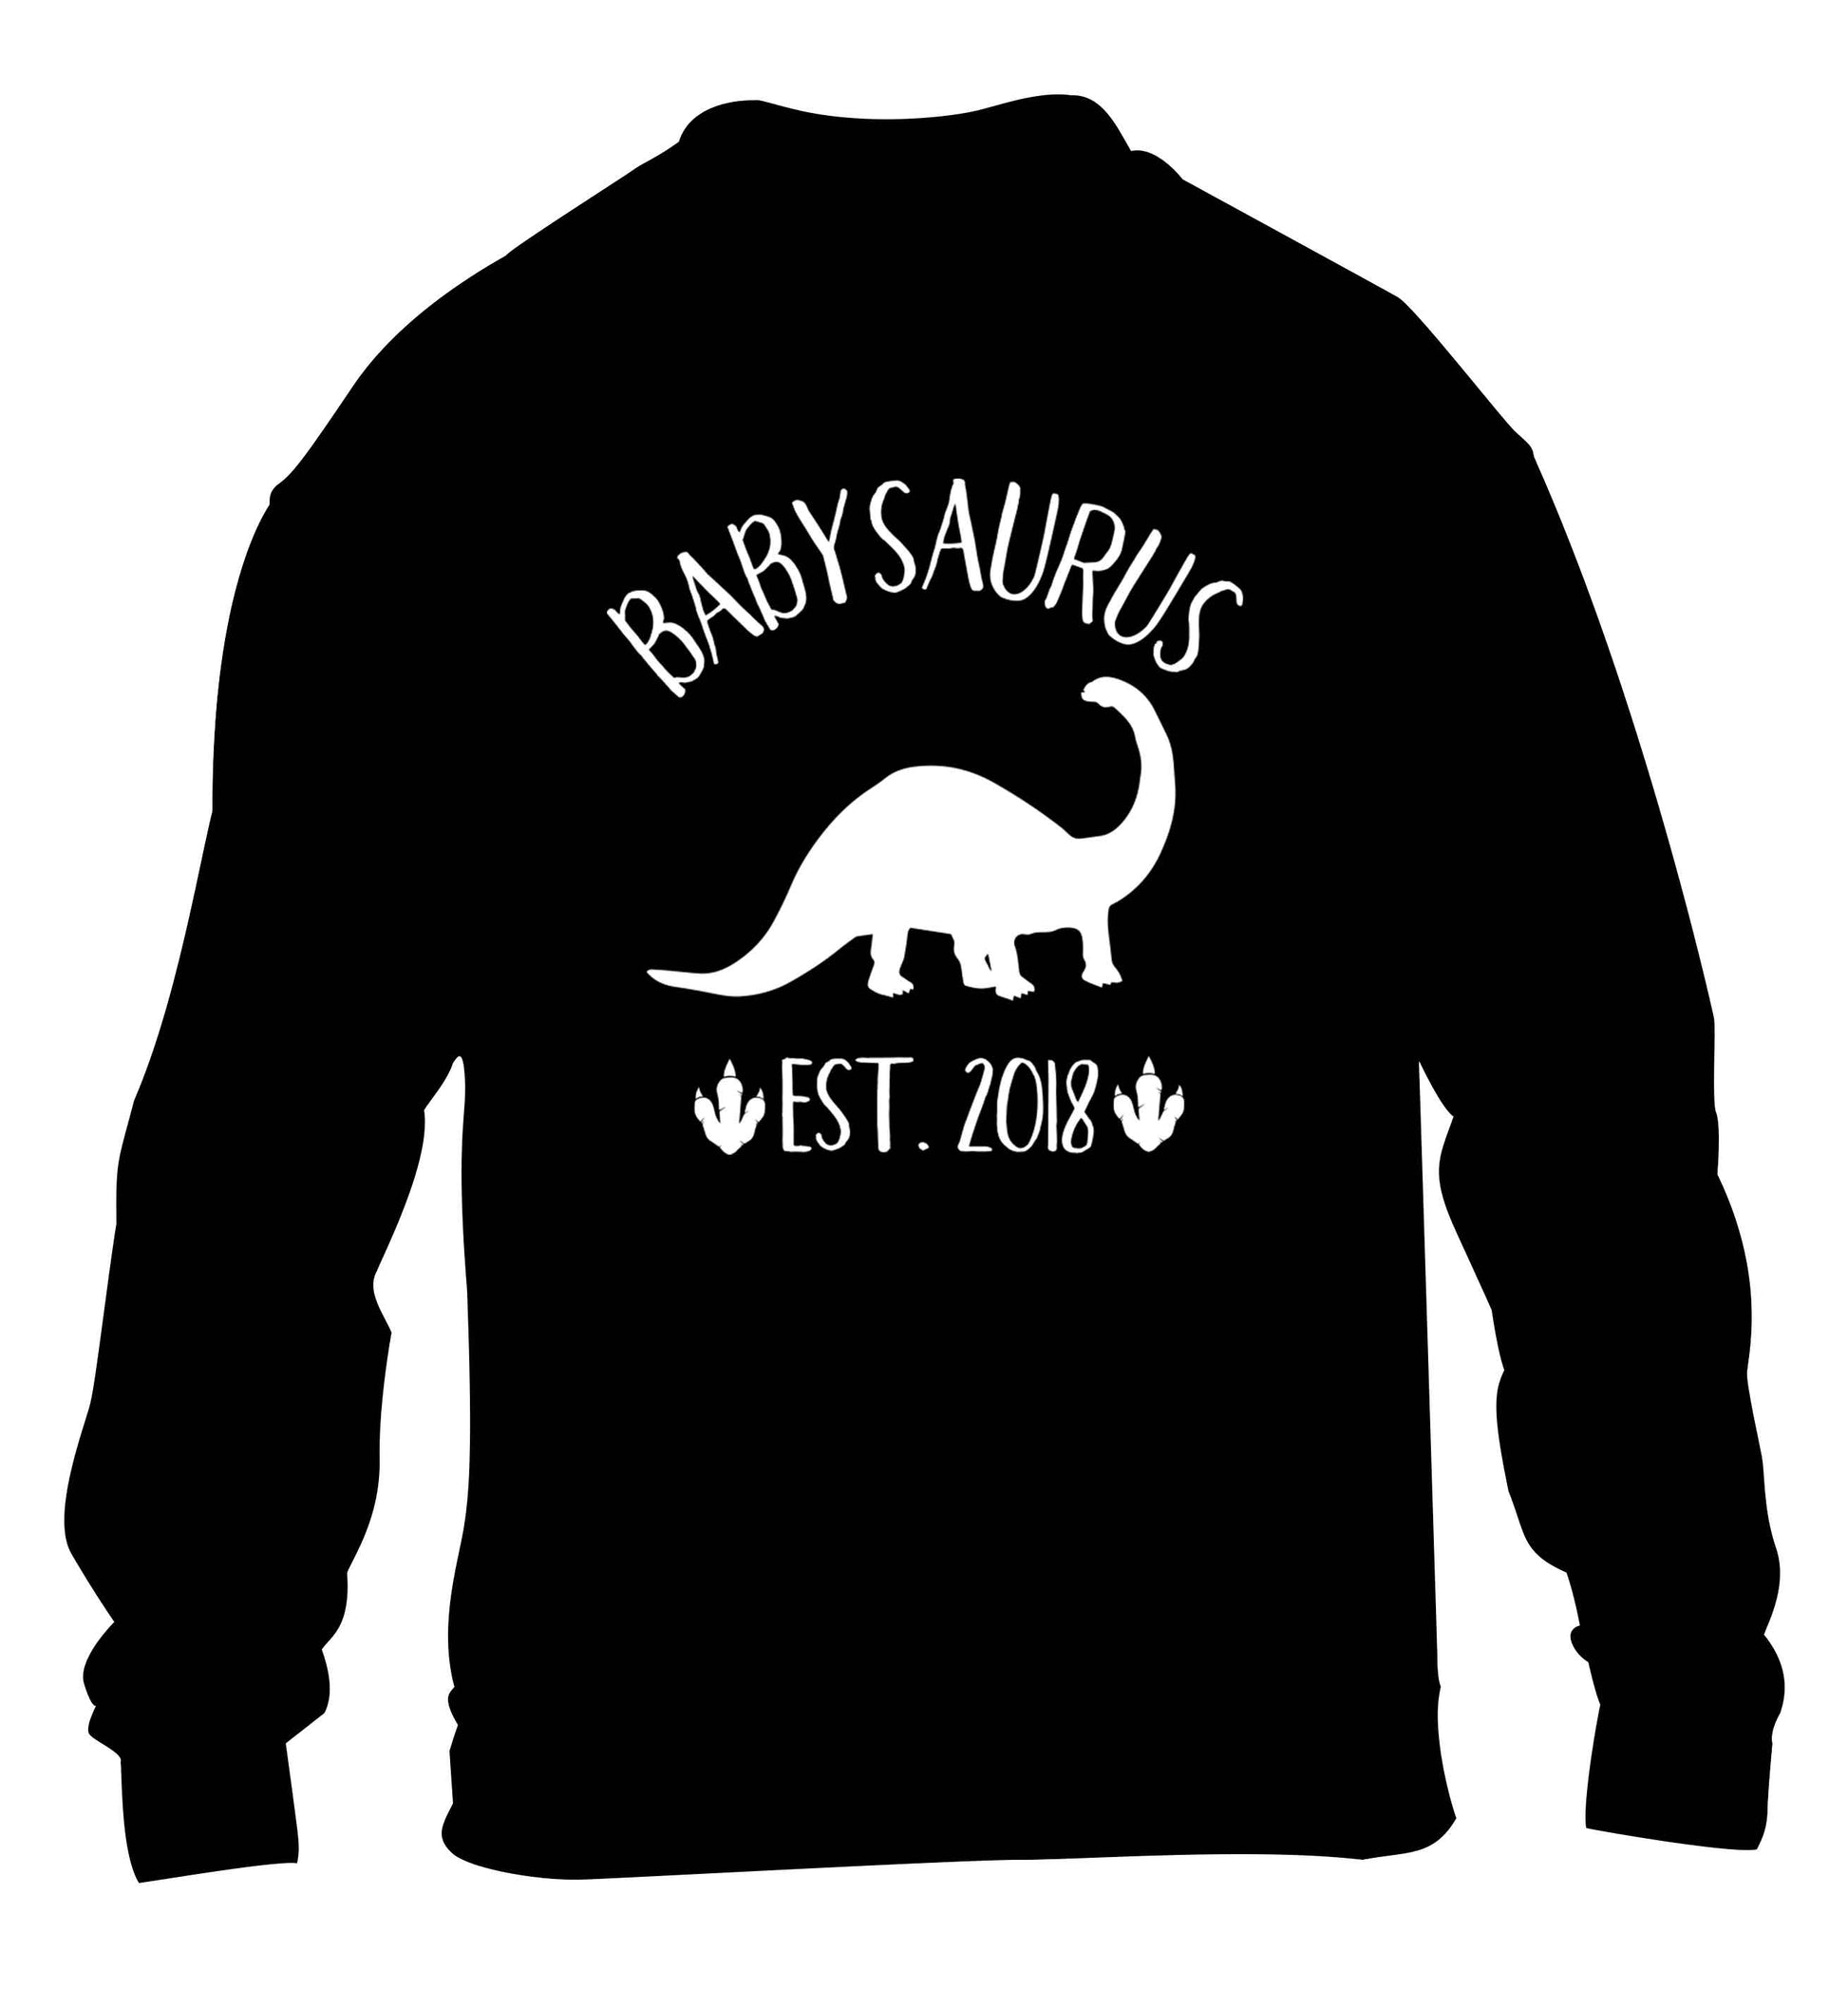 Personalised babysaurus since (custom date) children's black sweater 12-13 Years